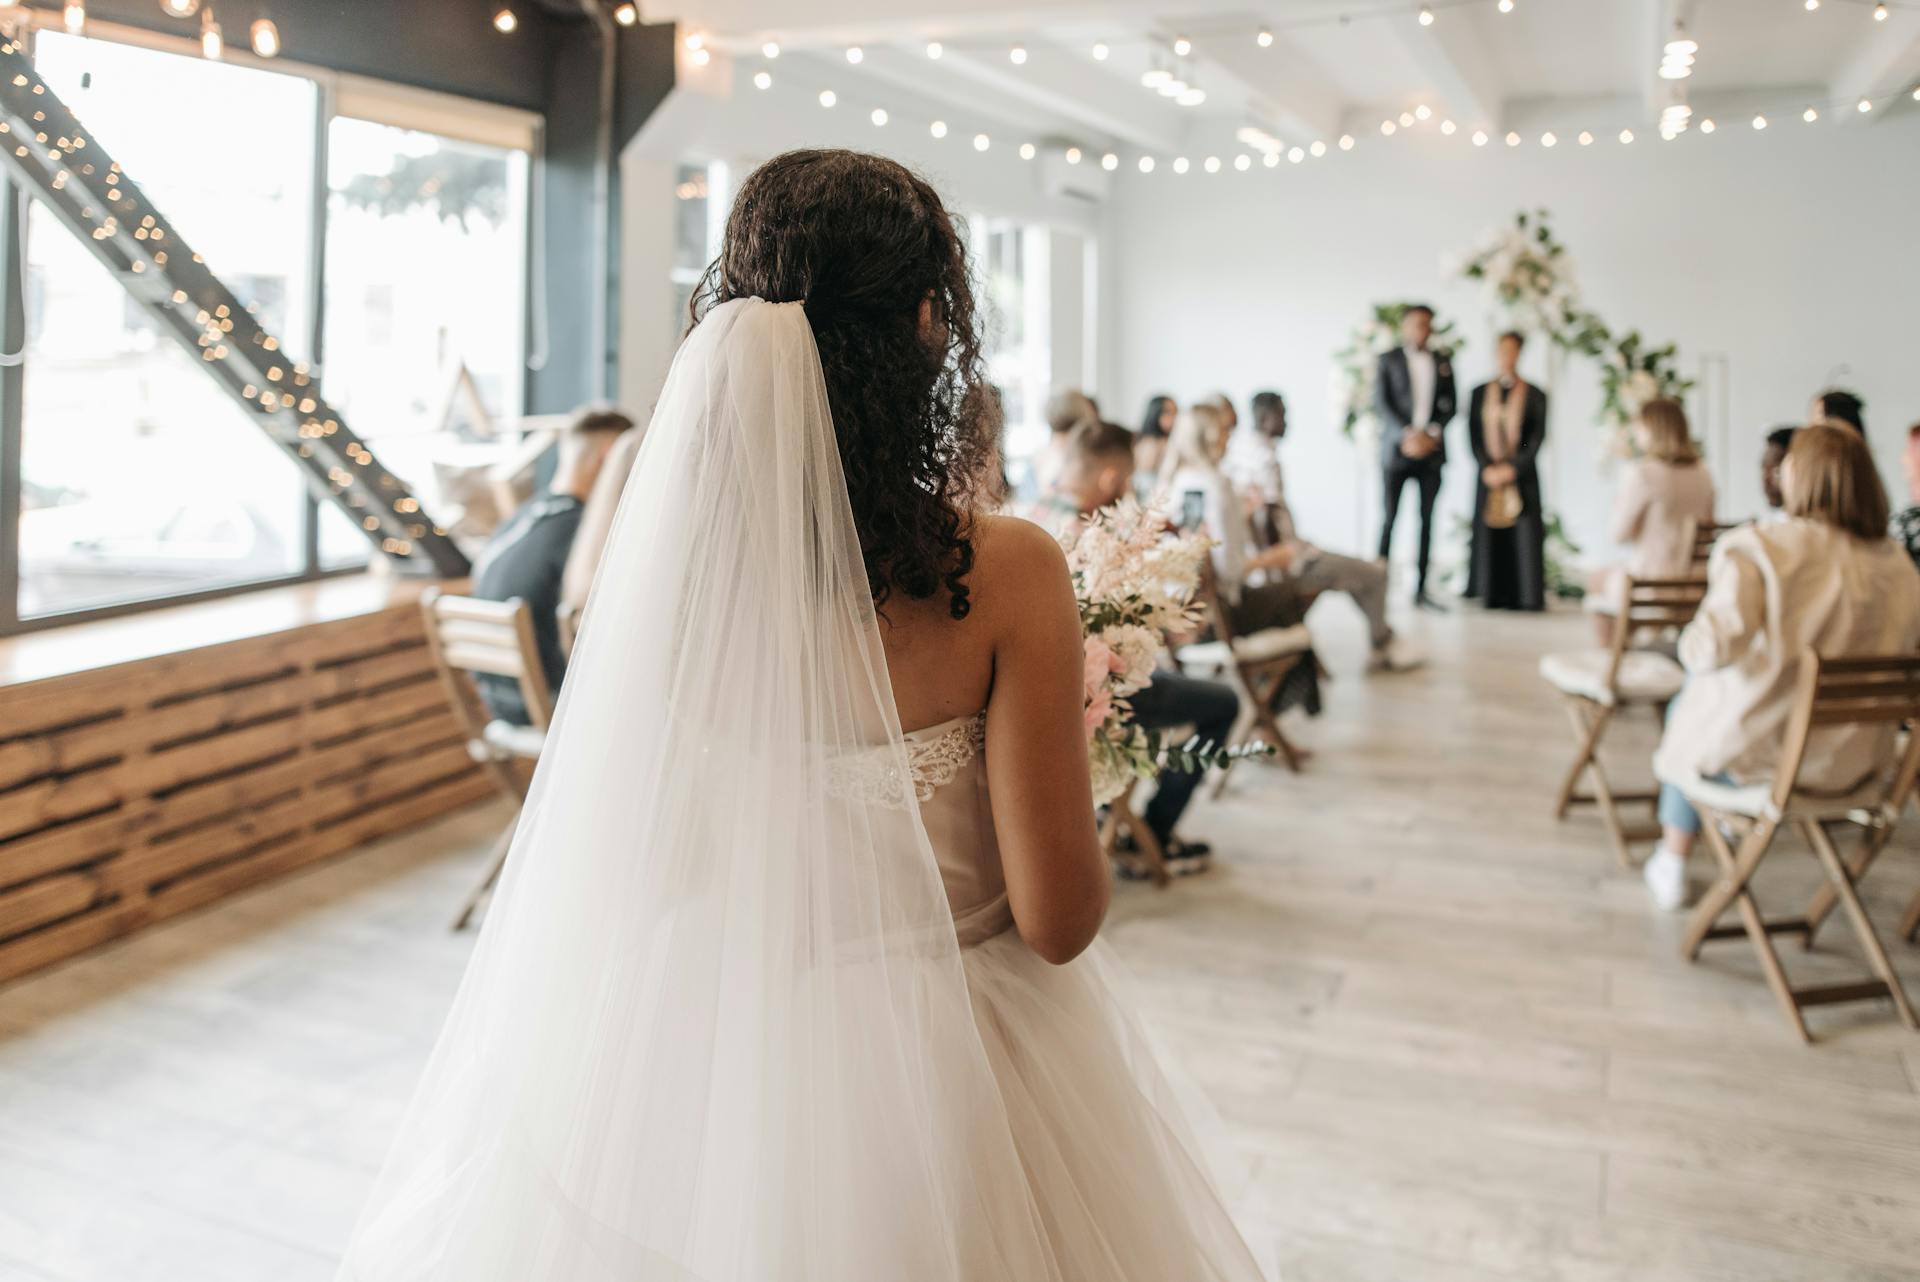 Wedding ceremony | Source: Pexels